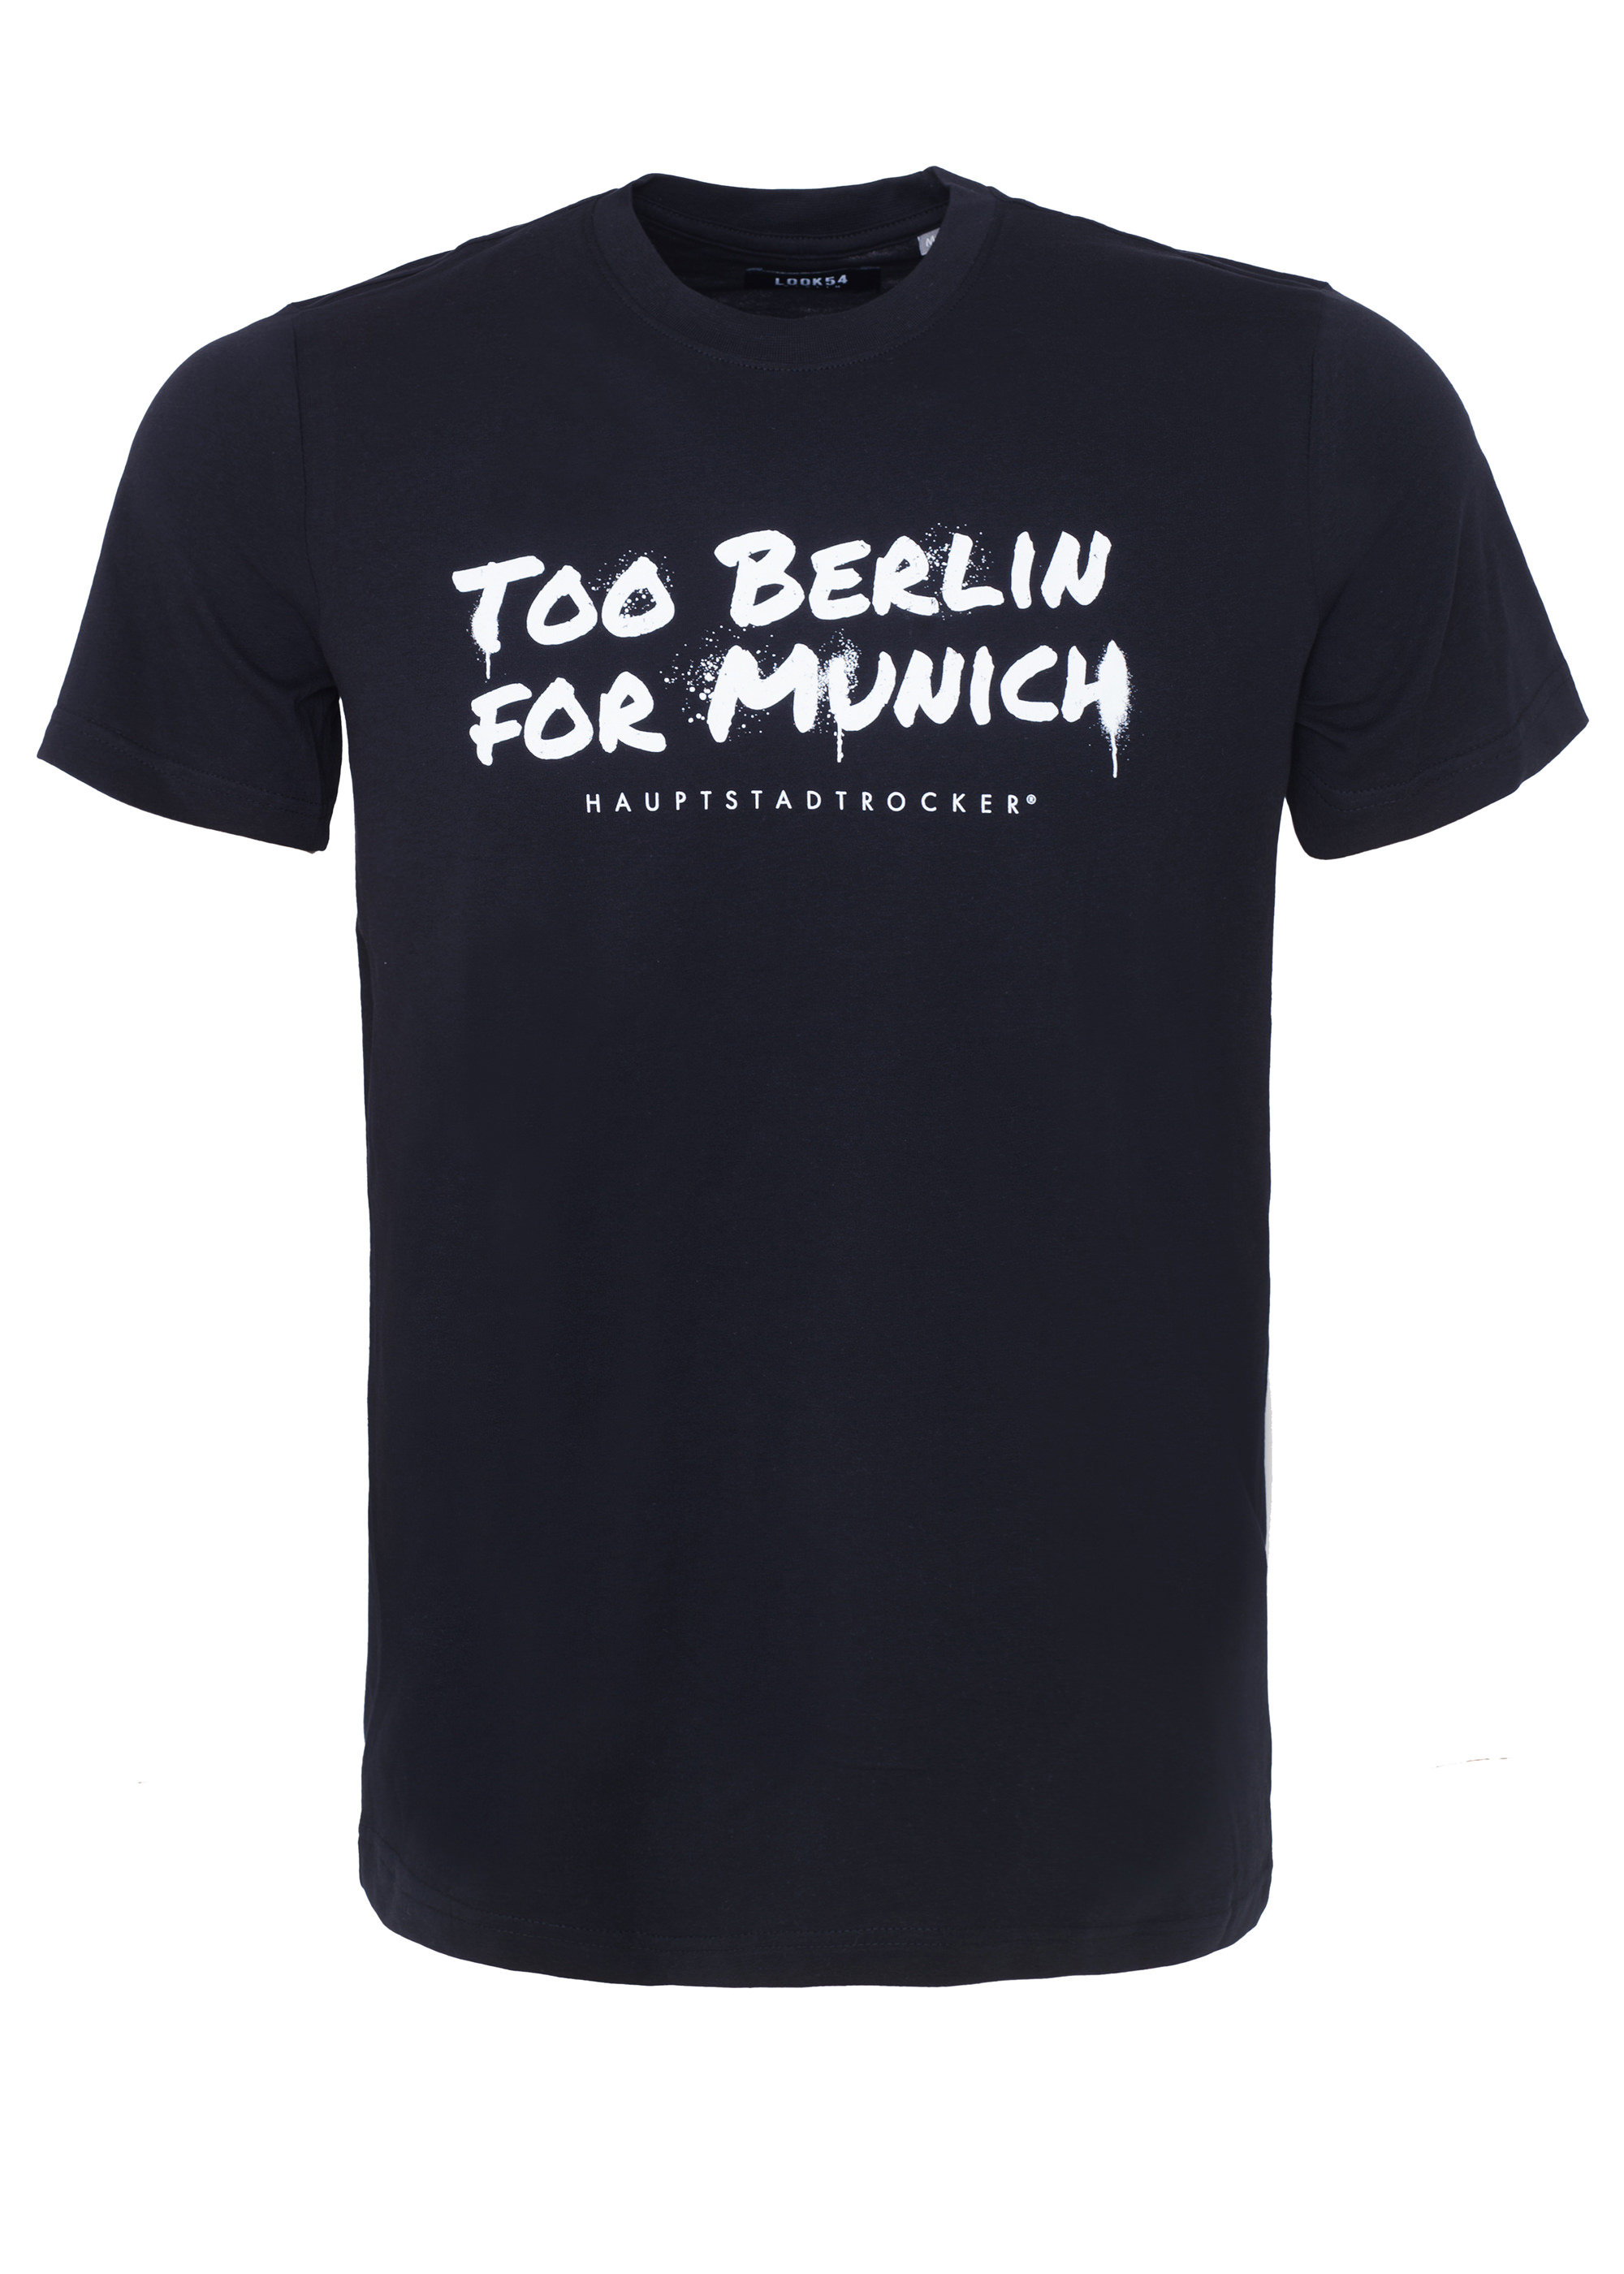 Too Berlin for Munich T-Shirt